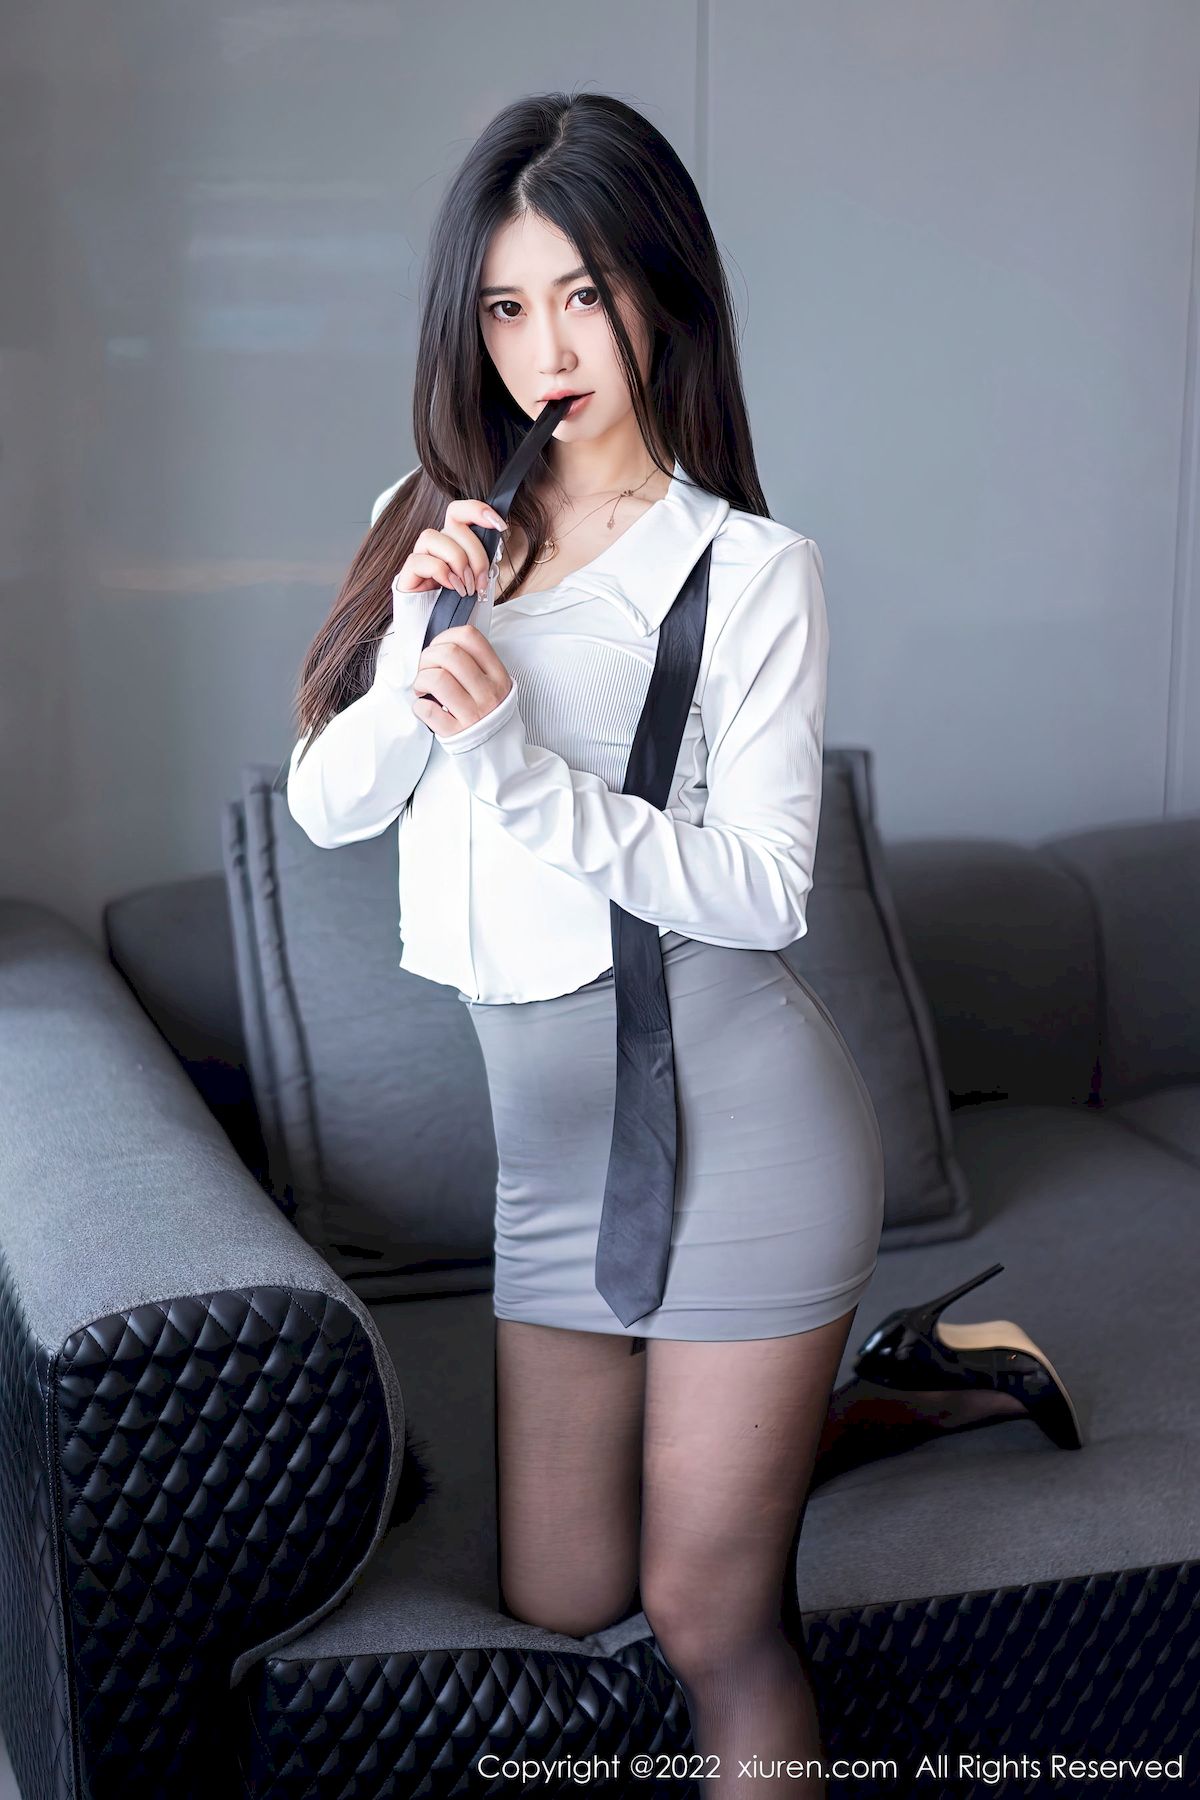 新人模特laura阿姣白色衬衫搭配灰色短裙性感写真